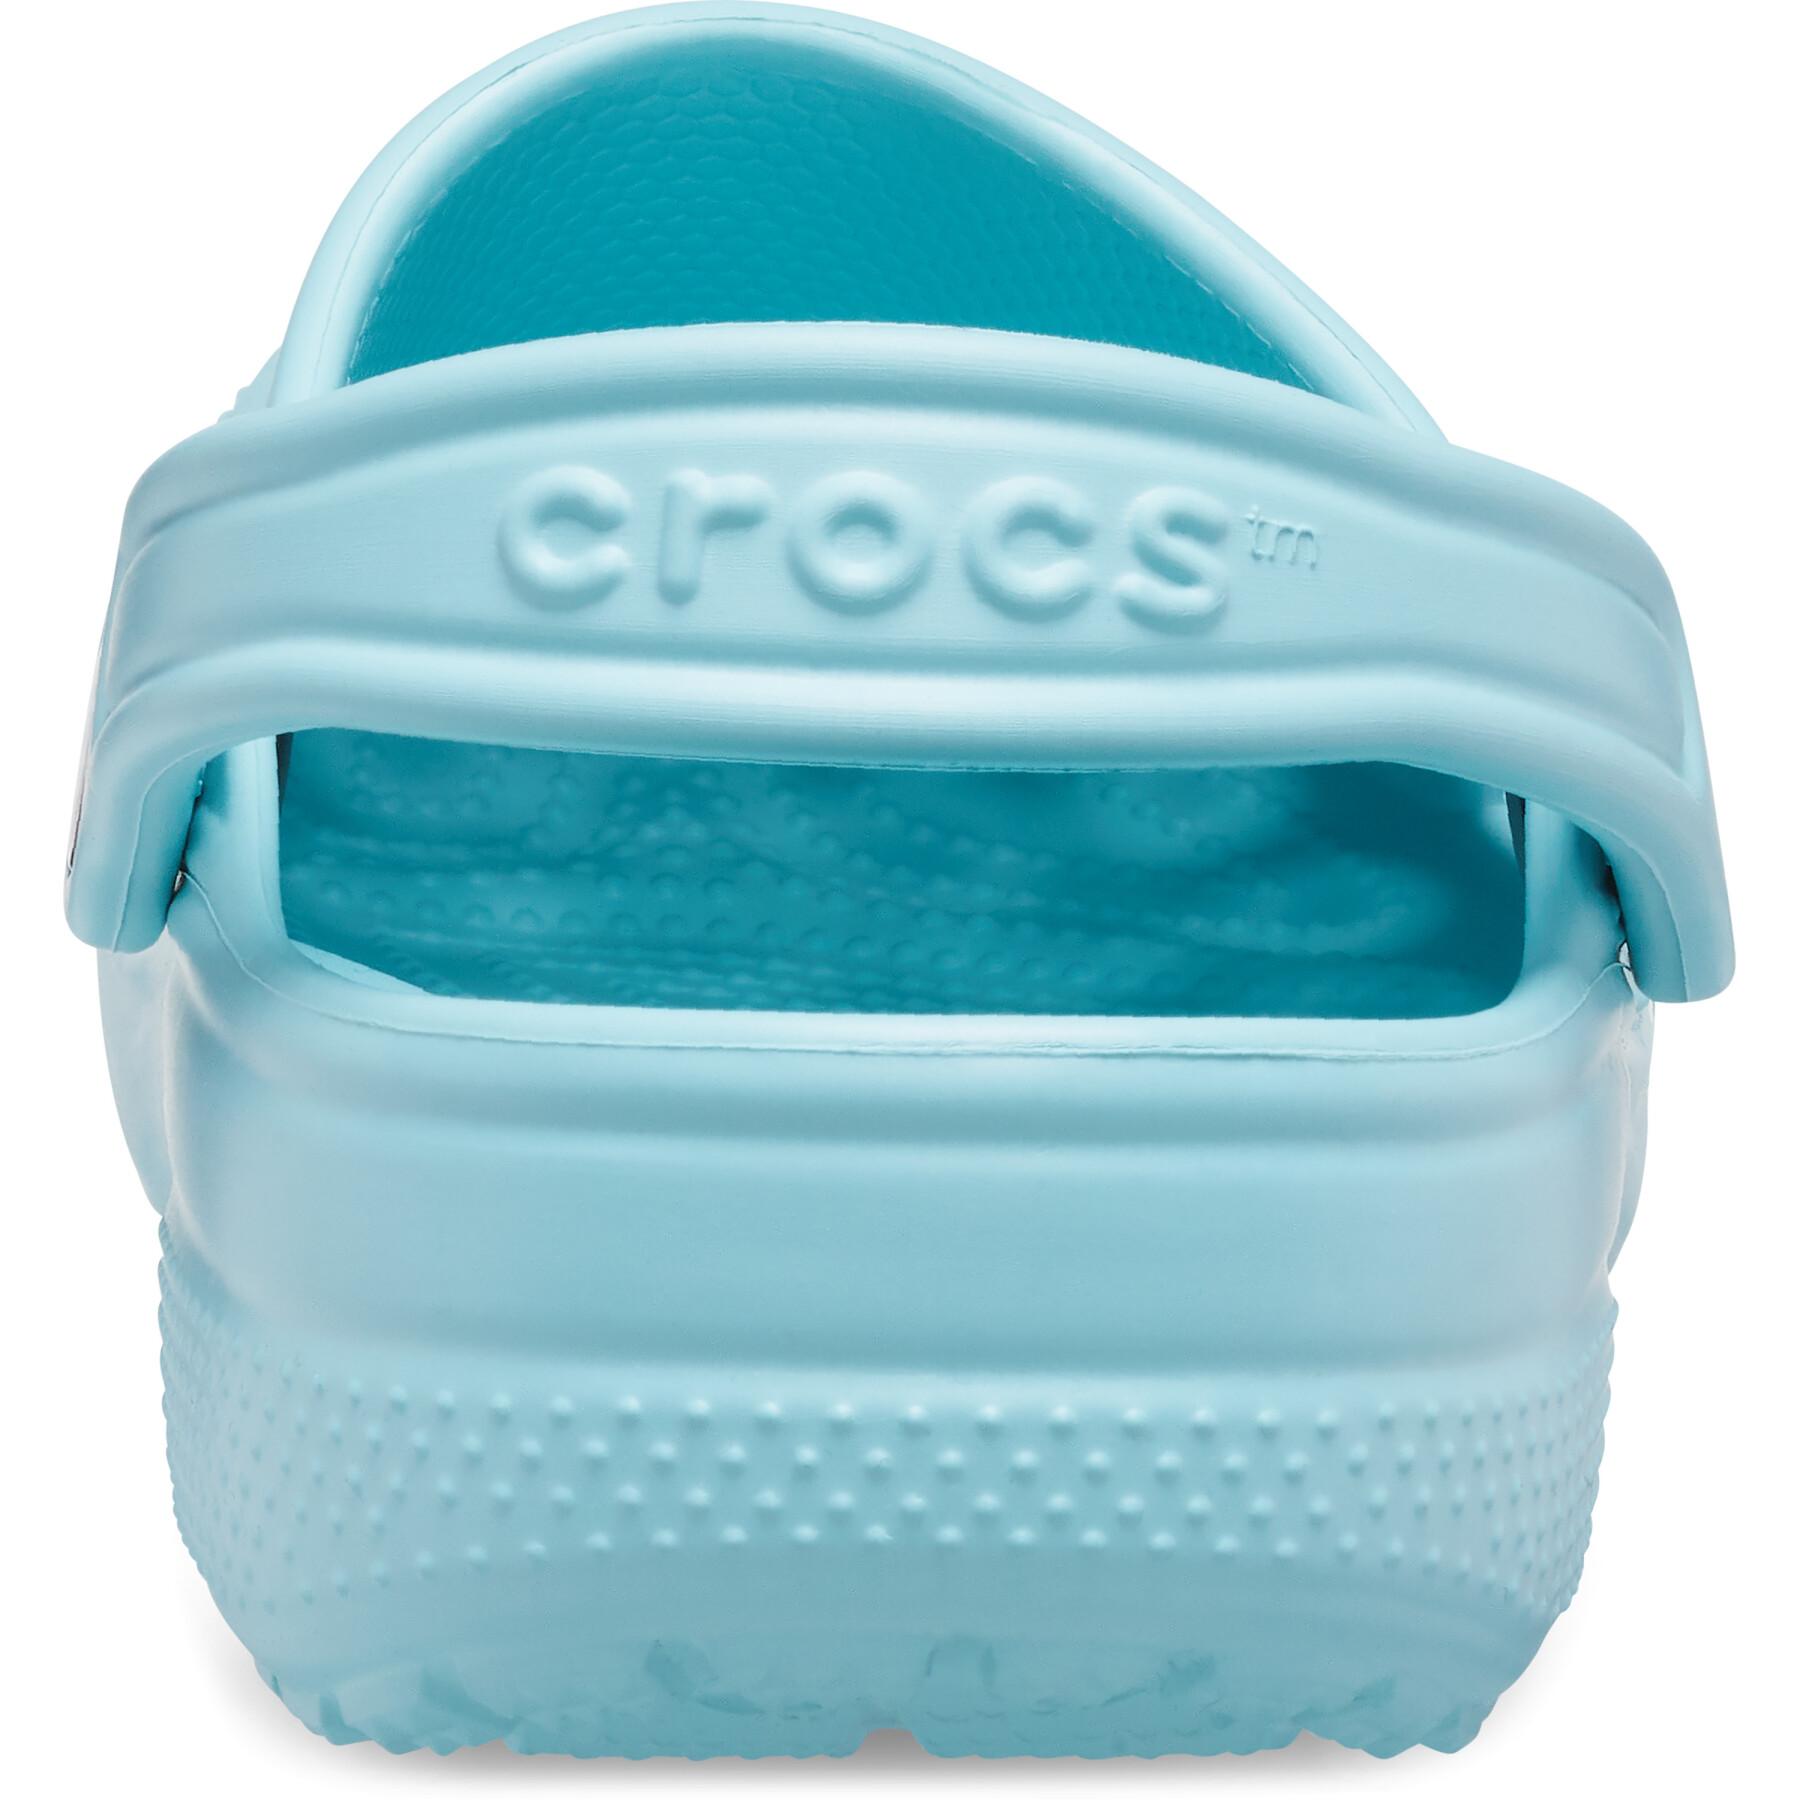 Zoccolo classico Crocs